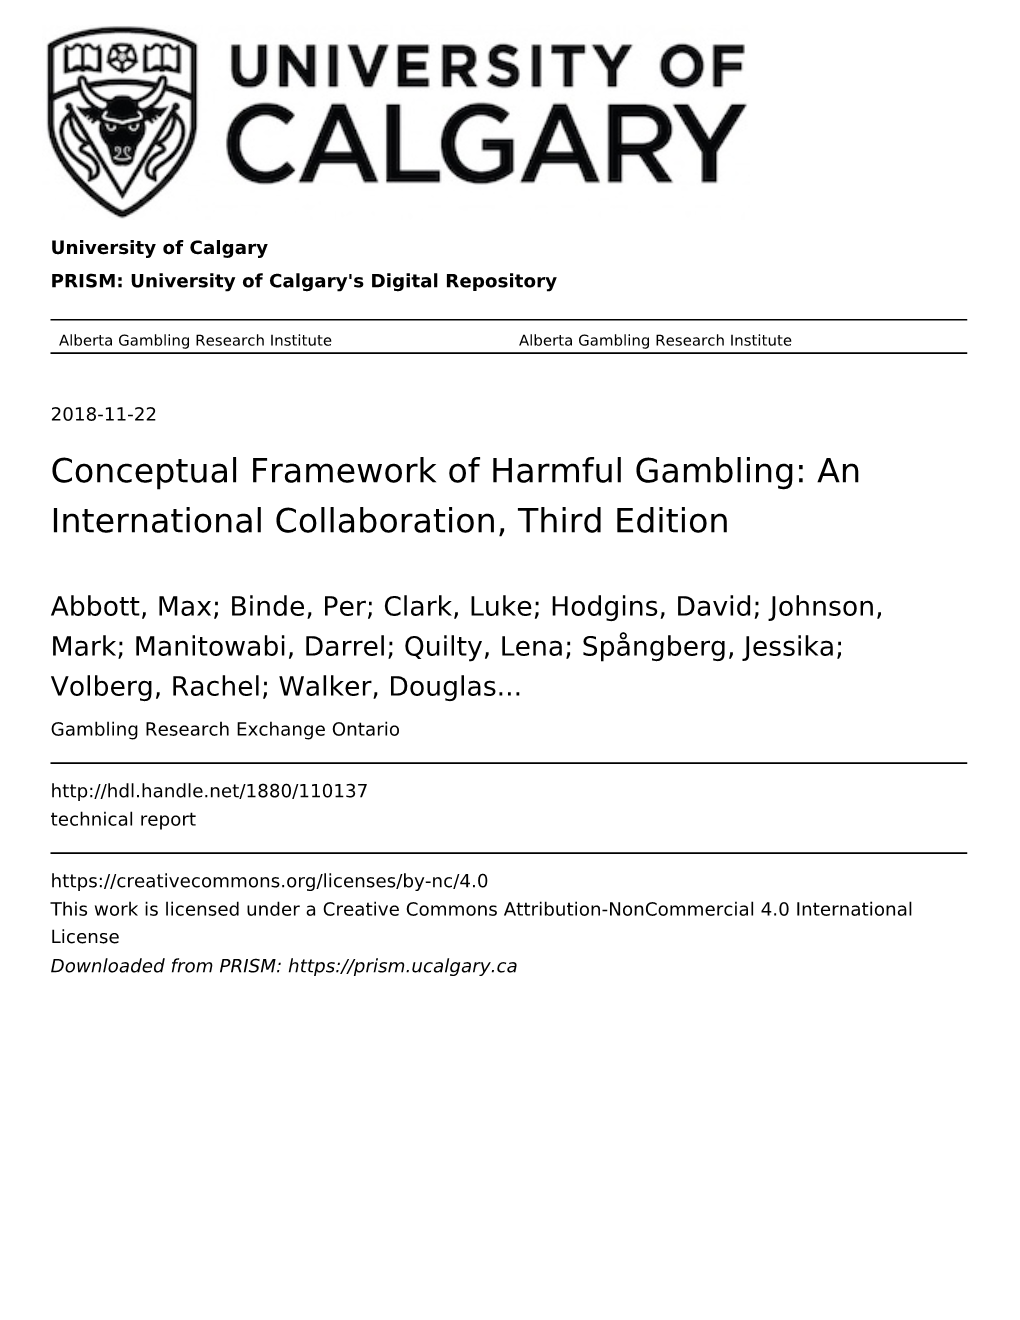 (2018) Conceptual Framework of Harmful Gambling